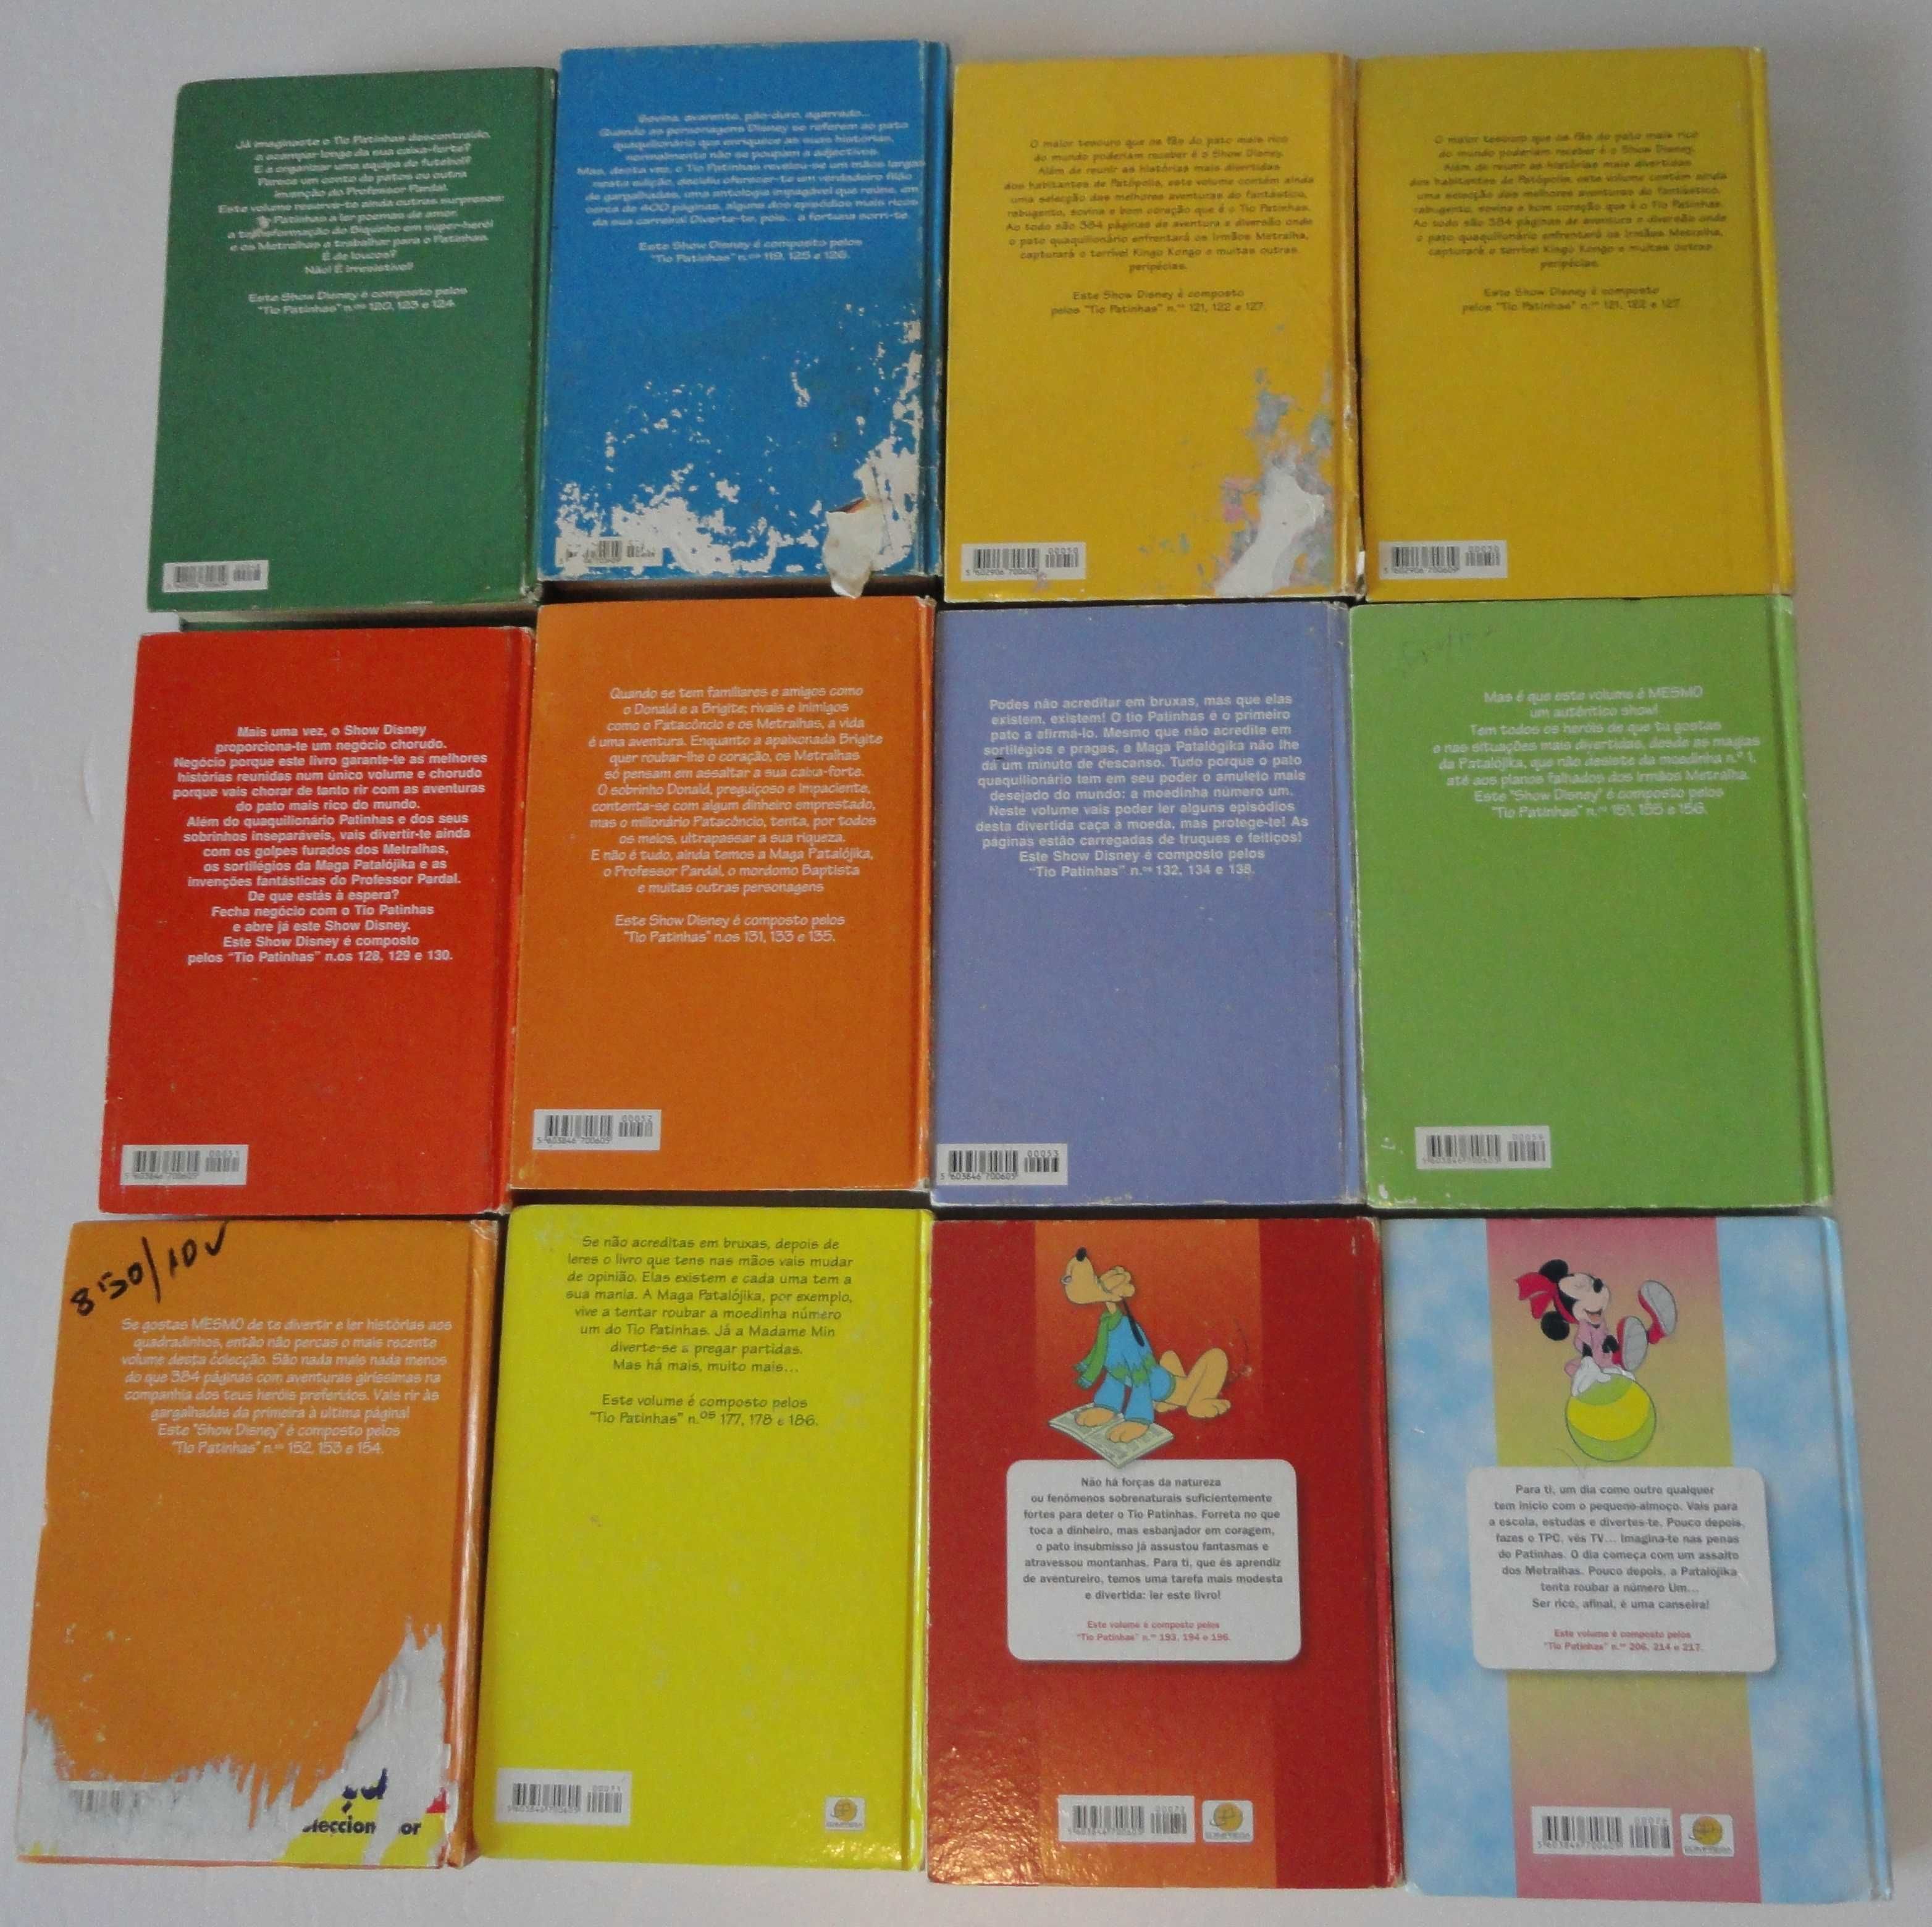 Show Disney - Conjunto de 12 volumes (1 duplicado)